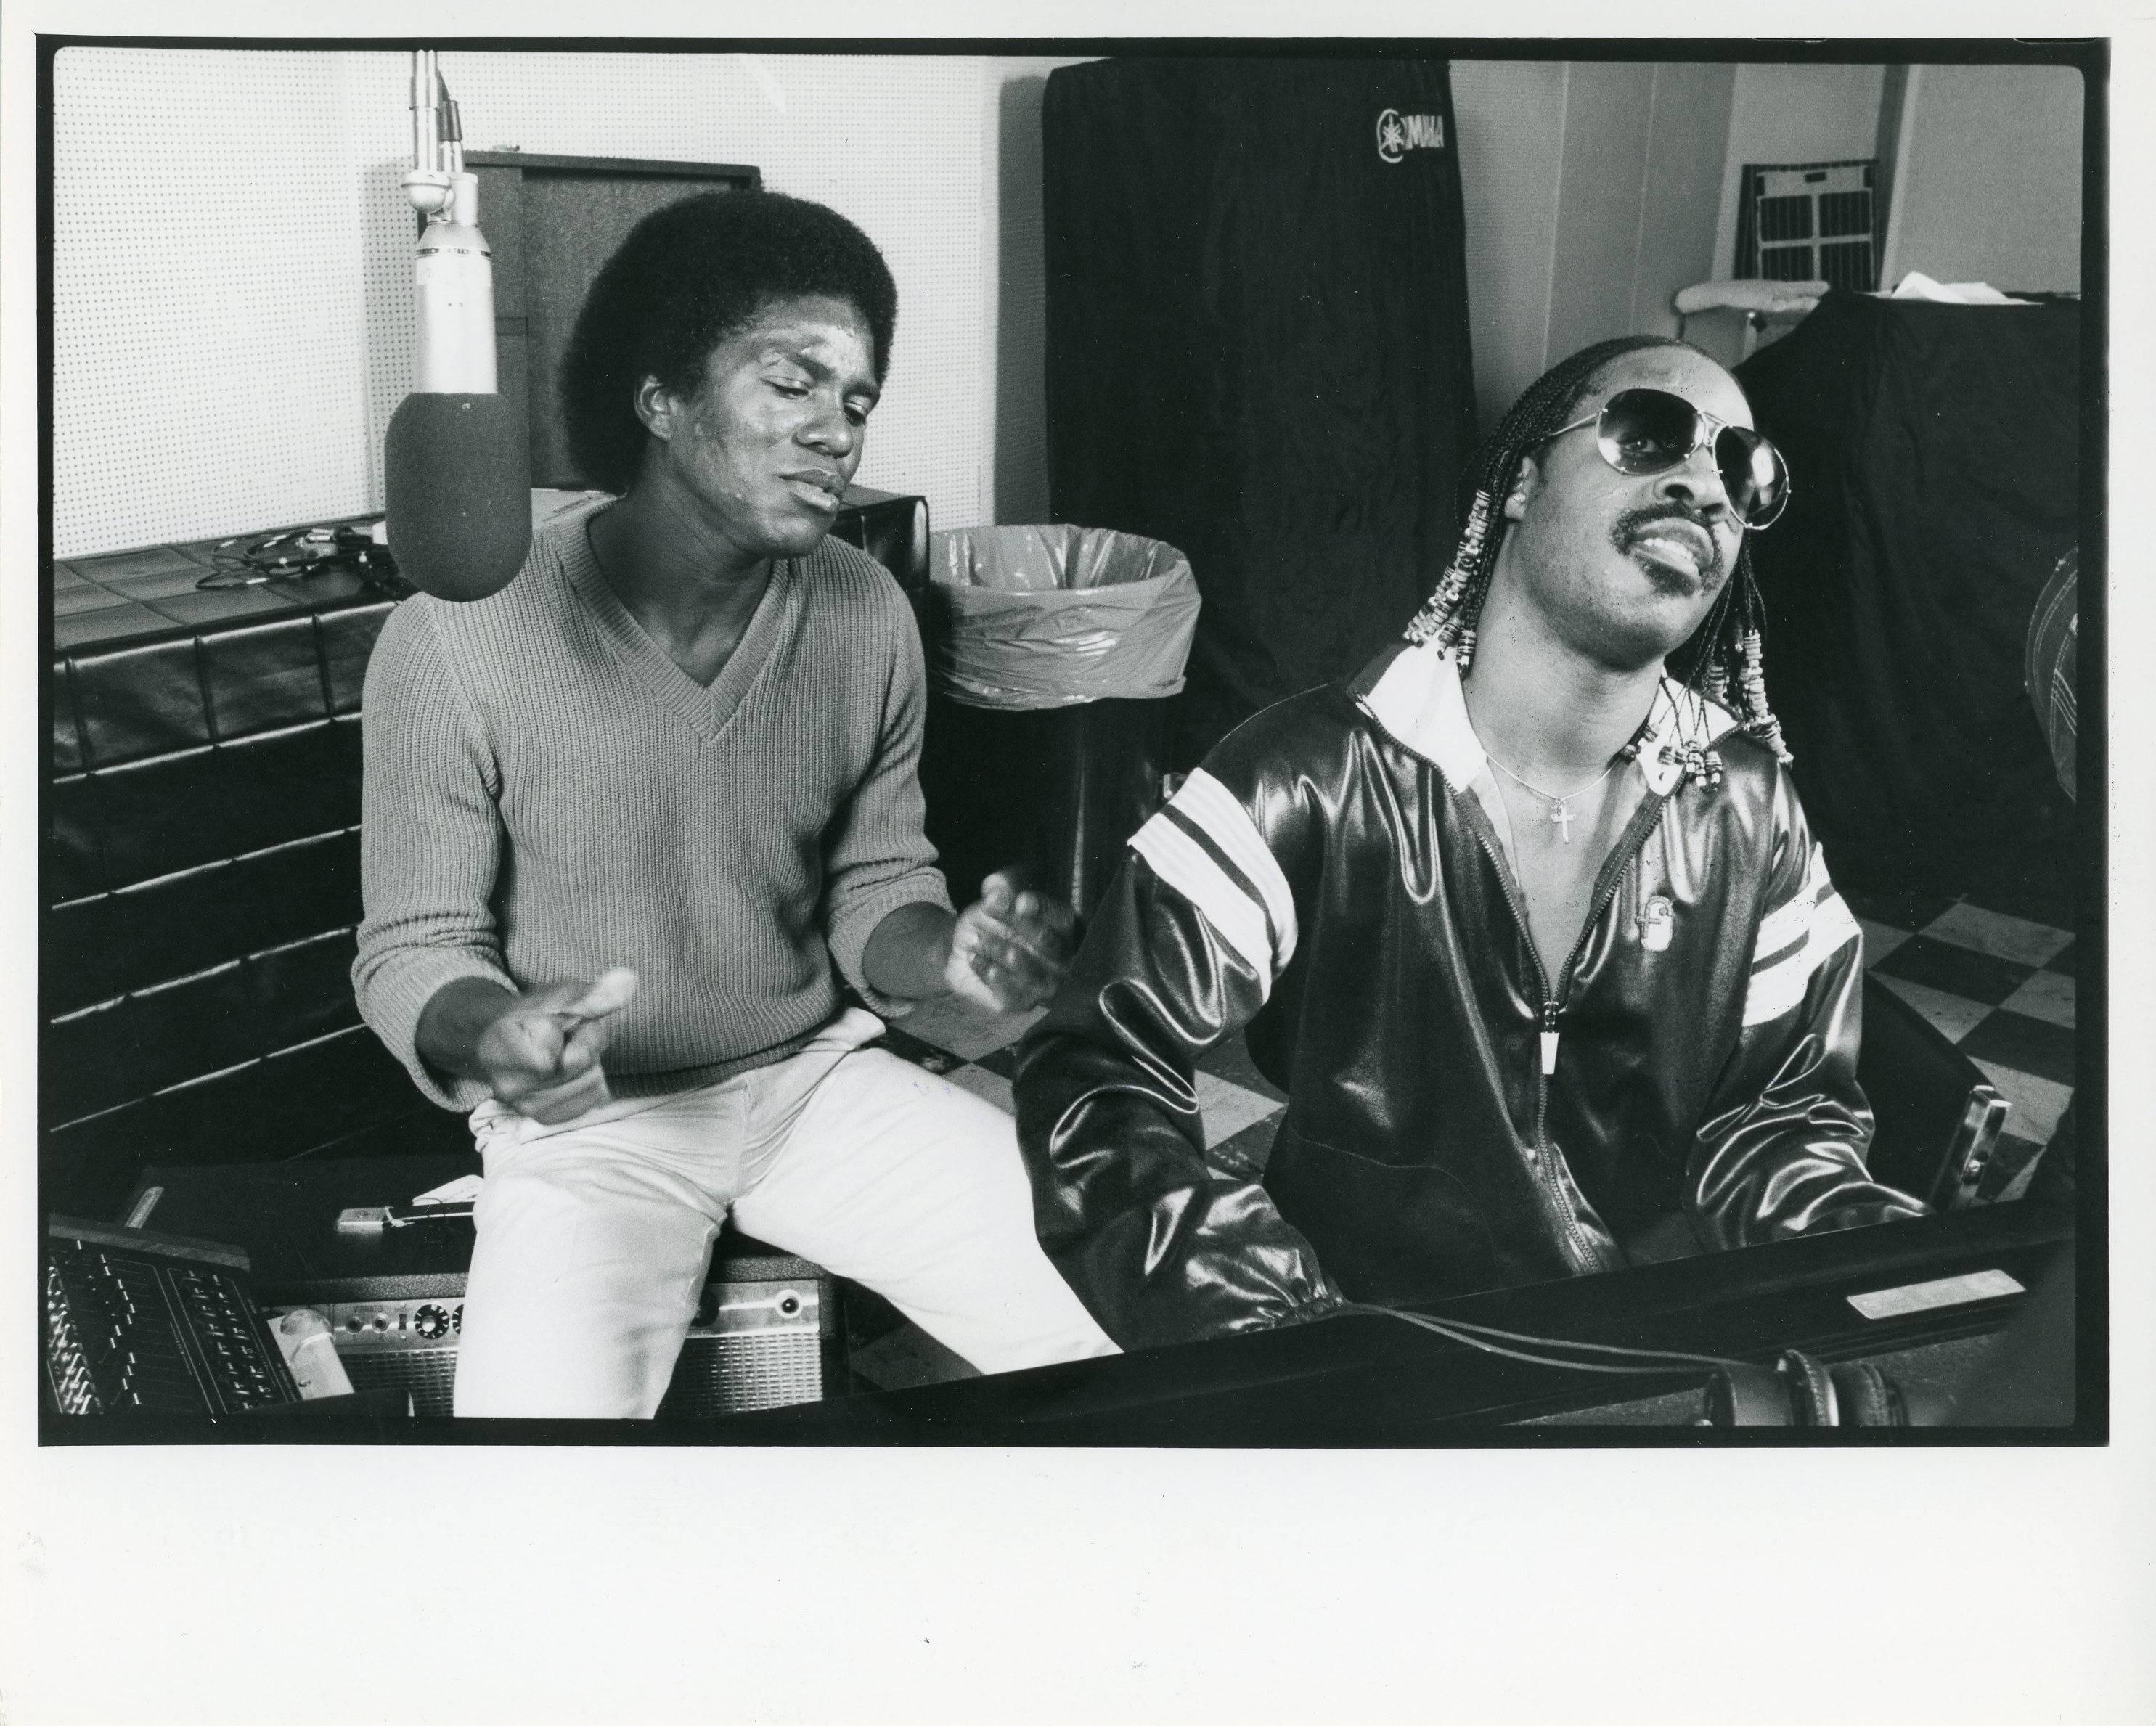 Unknown Portrait Photograph - Stevie Wonder and Jermaine Jackson Vintage Original Photograph